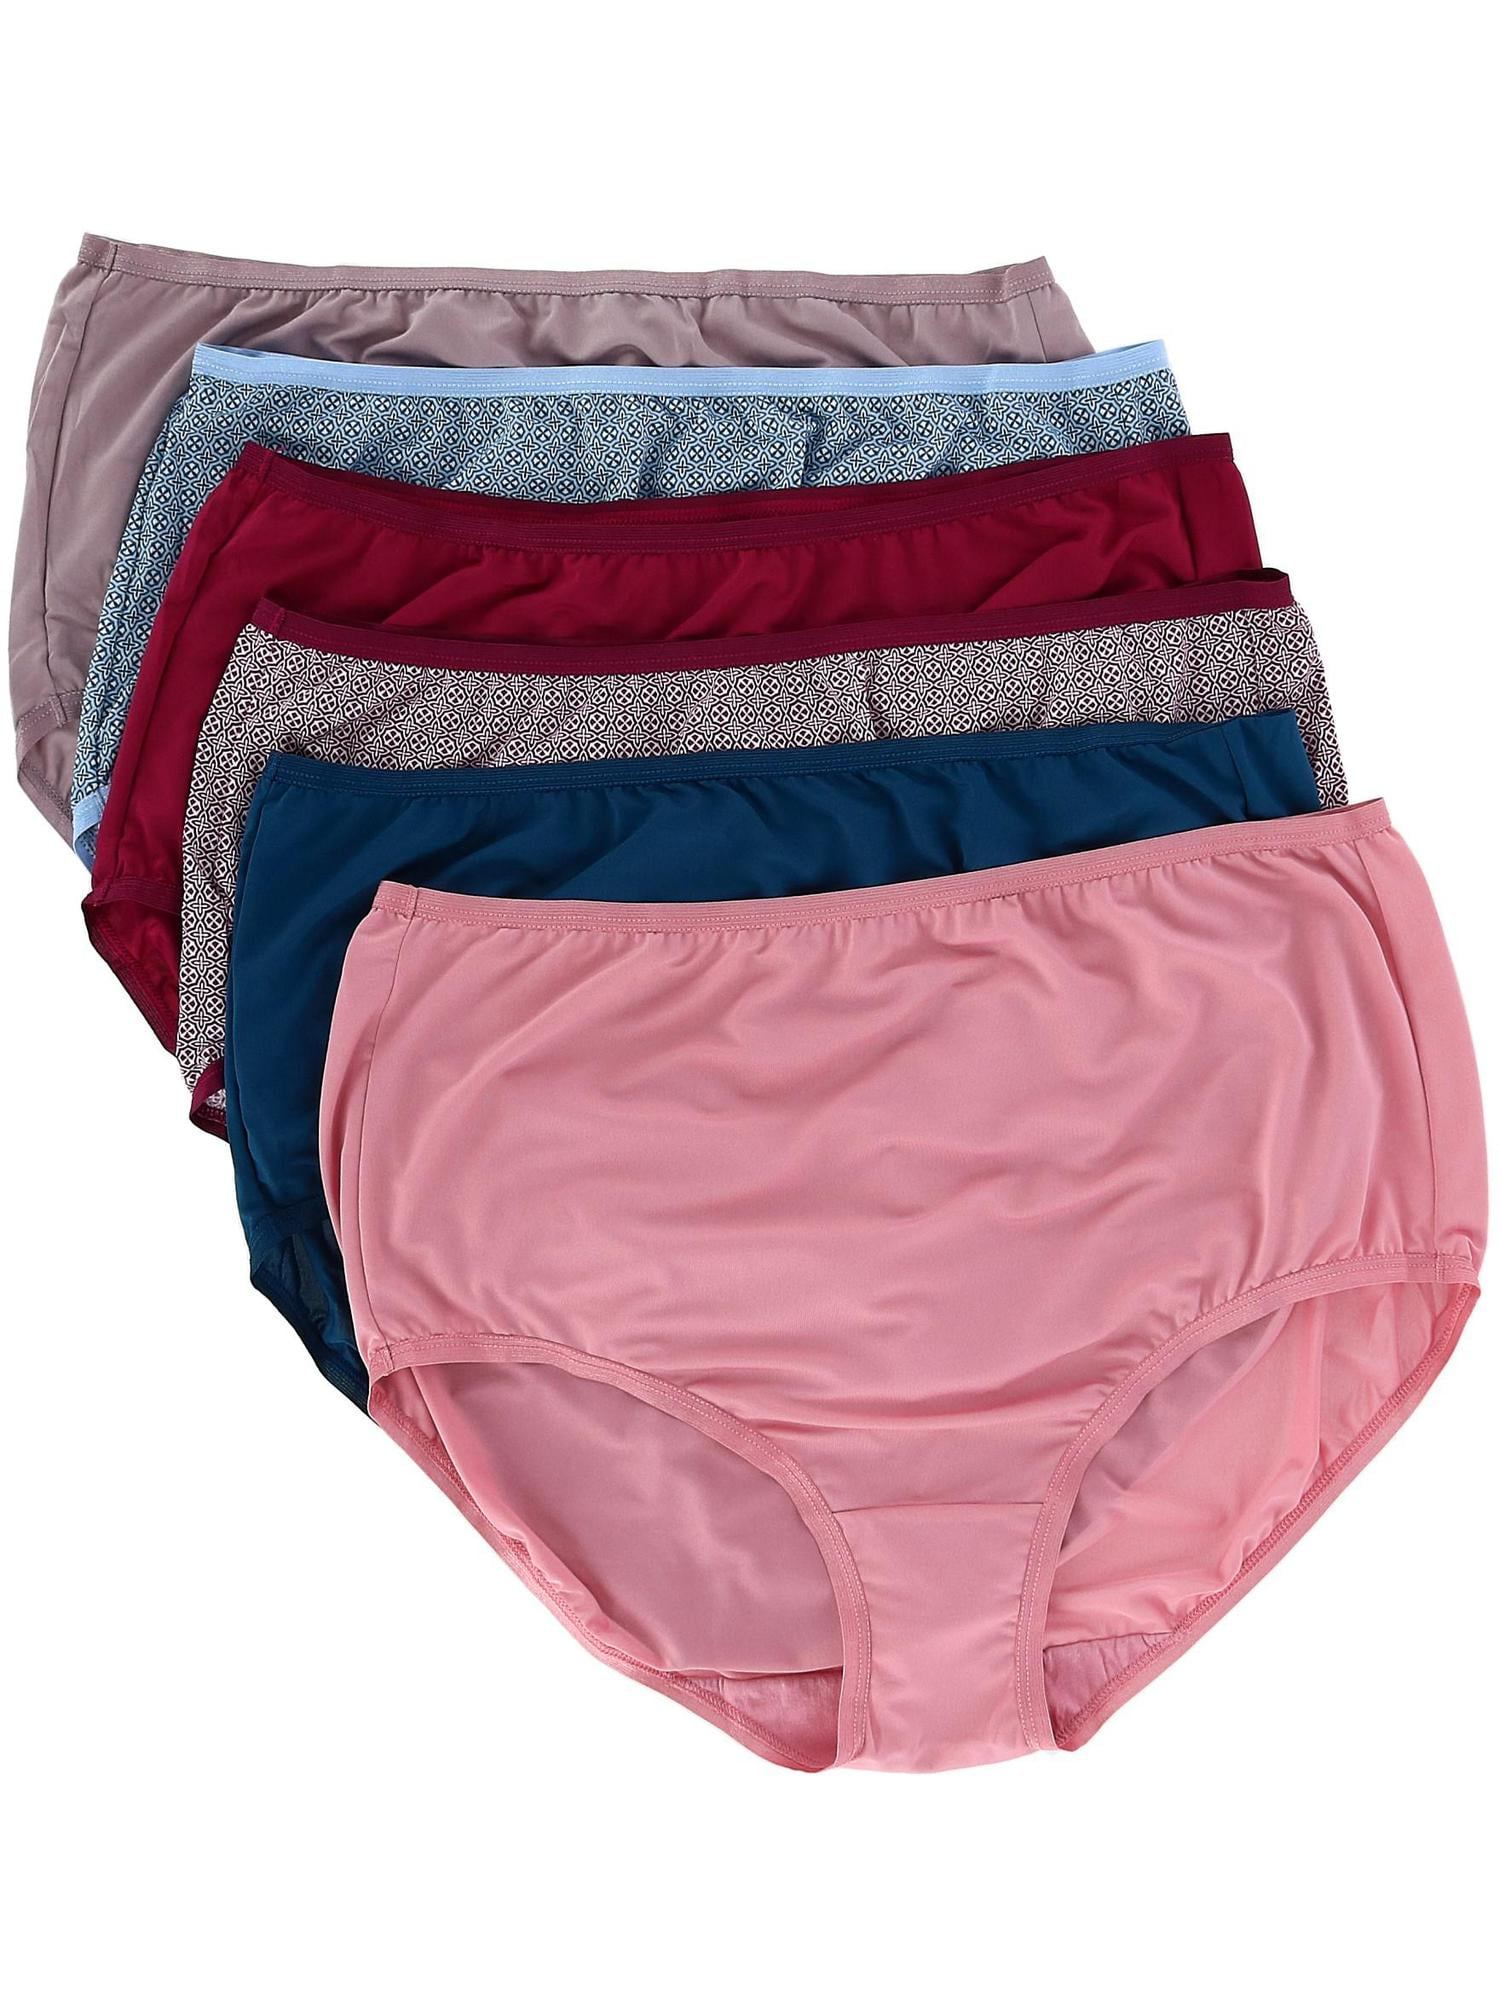 Women's Assorted Heather Brief Underwear, 6+3 Bonus Pack